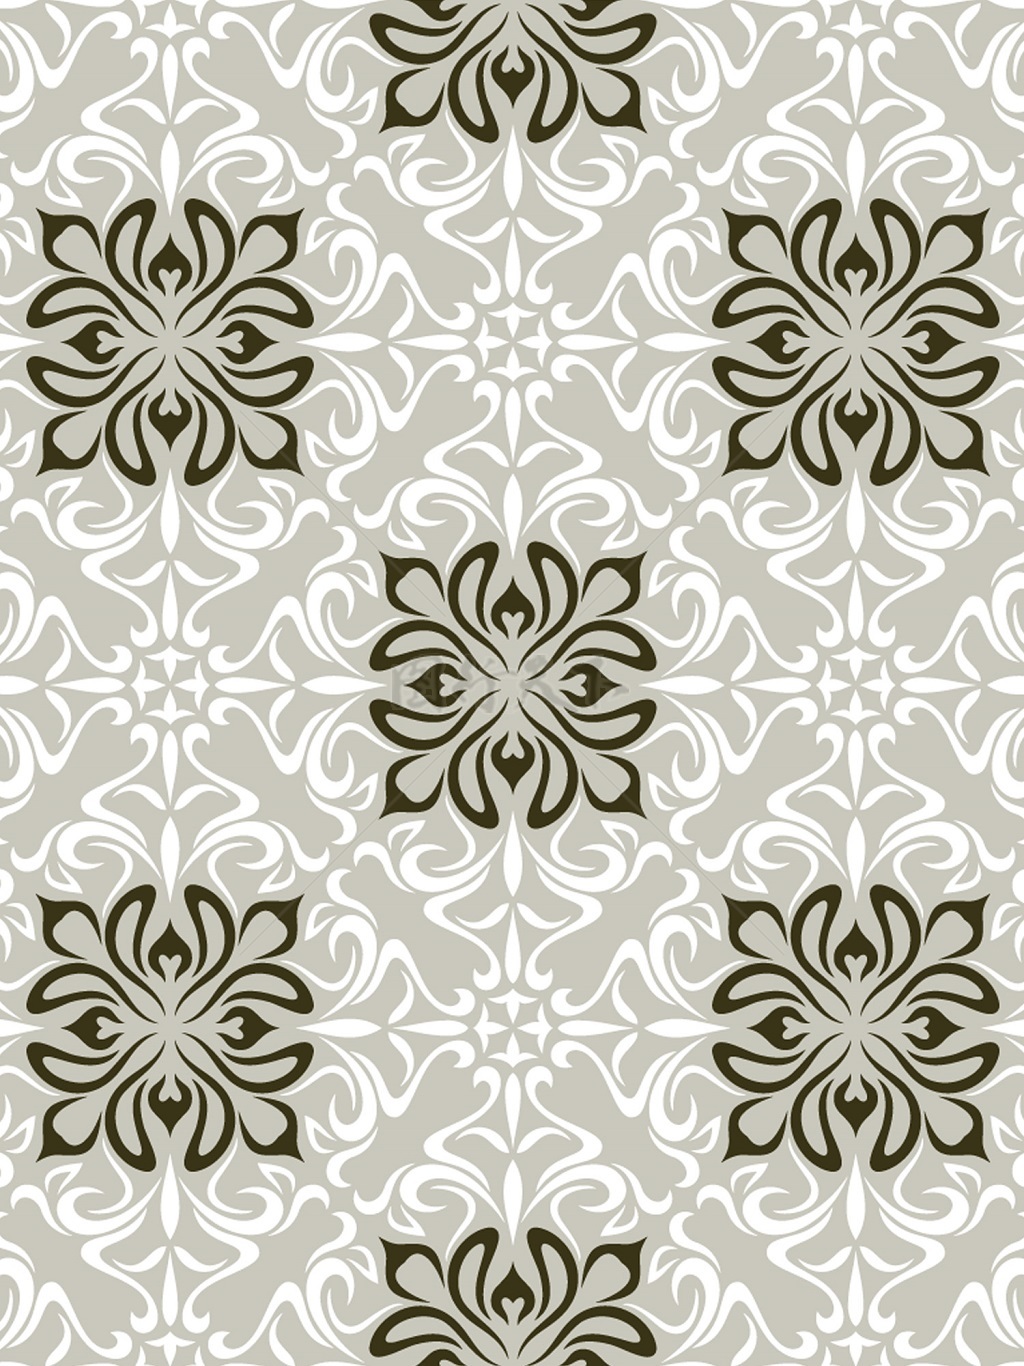 传统 欧式俄式花卉底图底纹  图案背景贴图  灰底菱形黑白纹